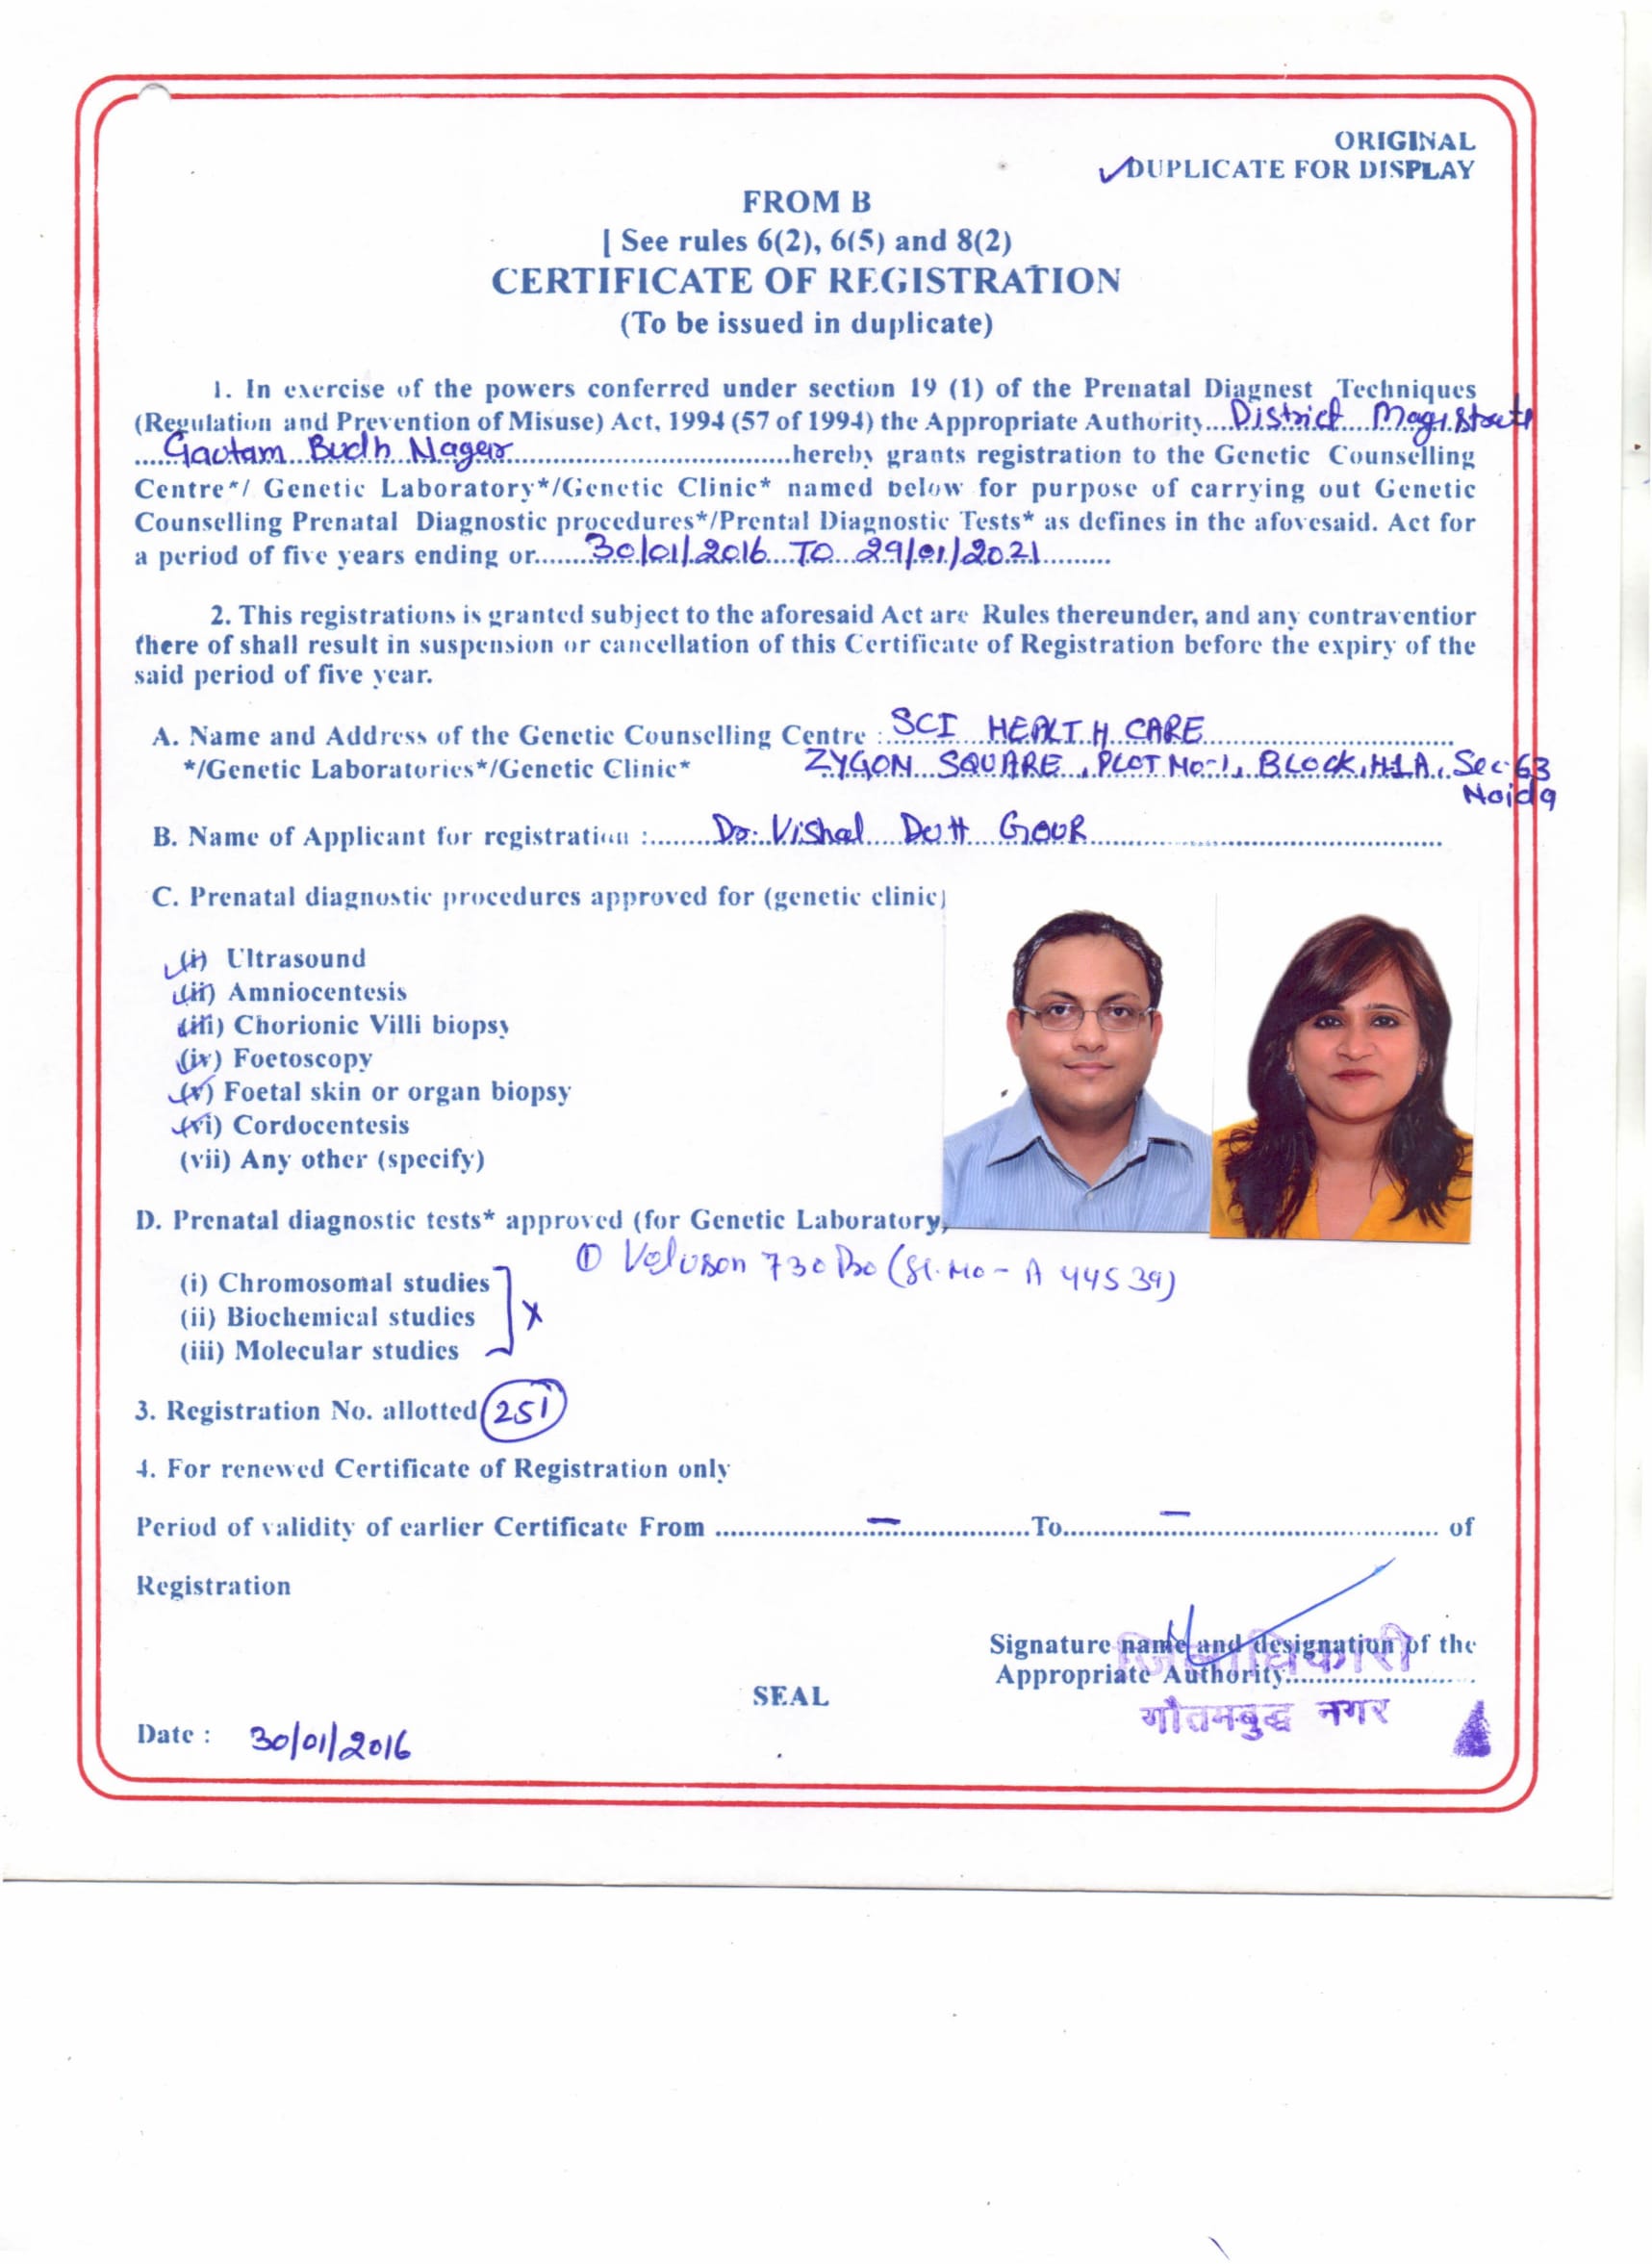 Dr Shivani and Dr Vishal Registration Certification